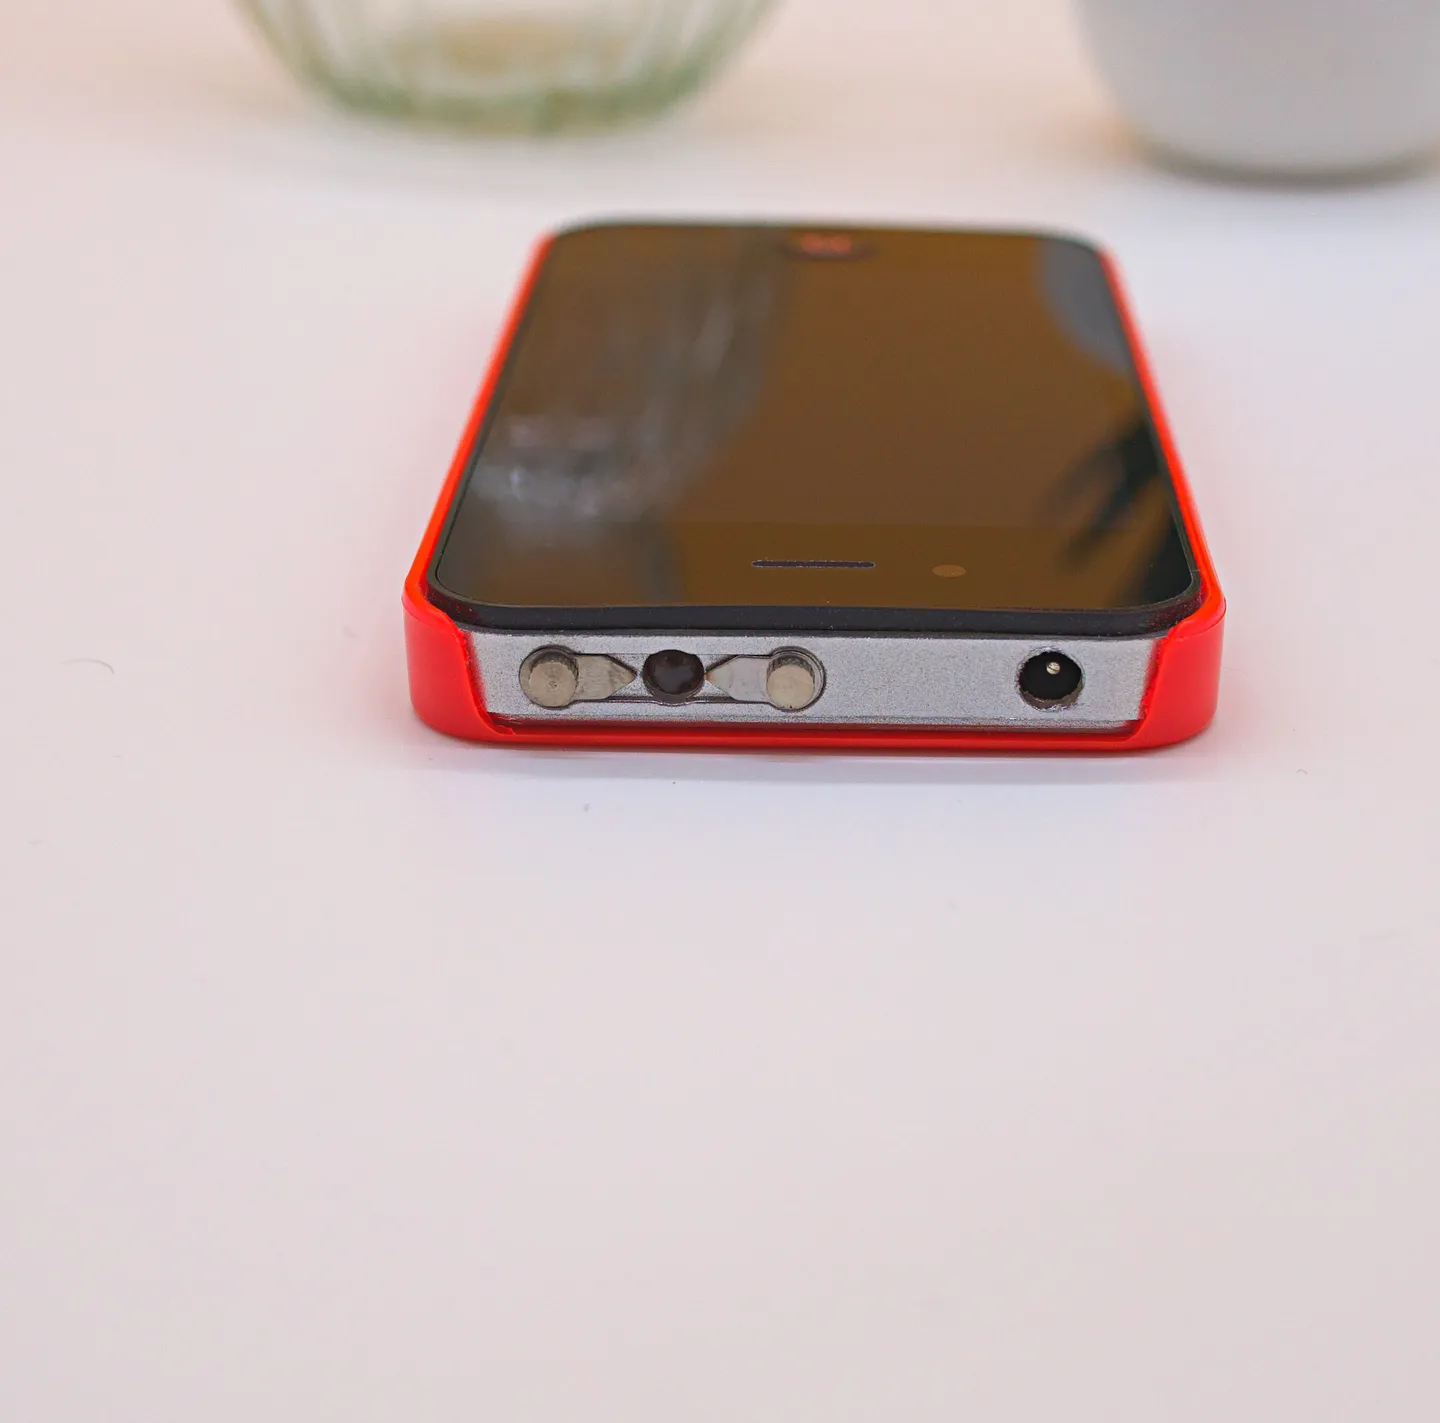 Shocker & Taser - Iphone Shocker Taser, 2 400 000 Volts discrétion assurée (Version Rouge)